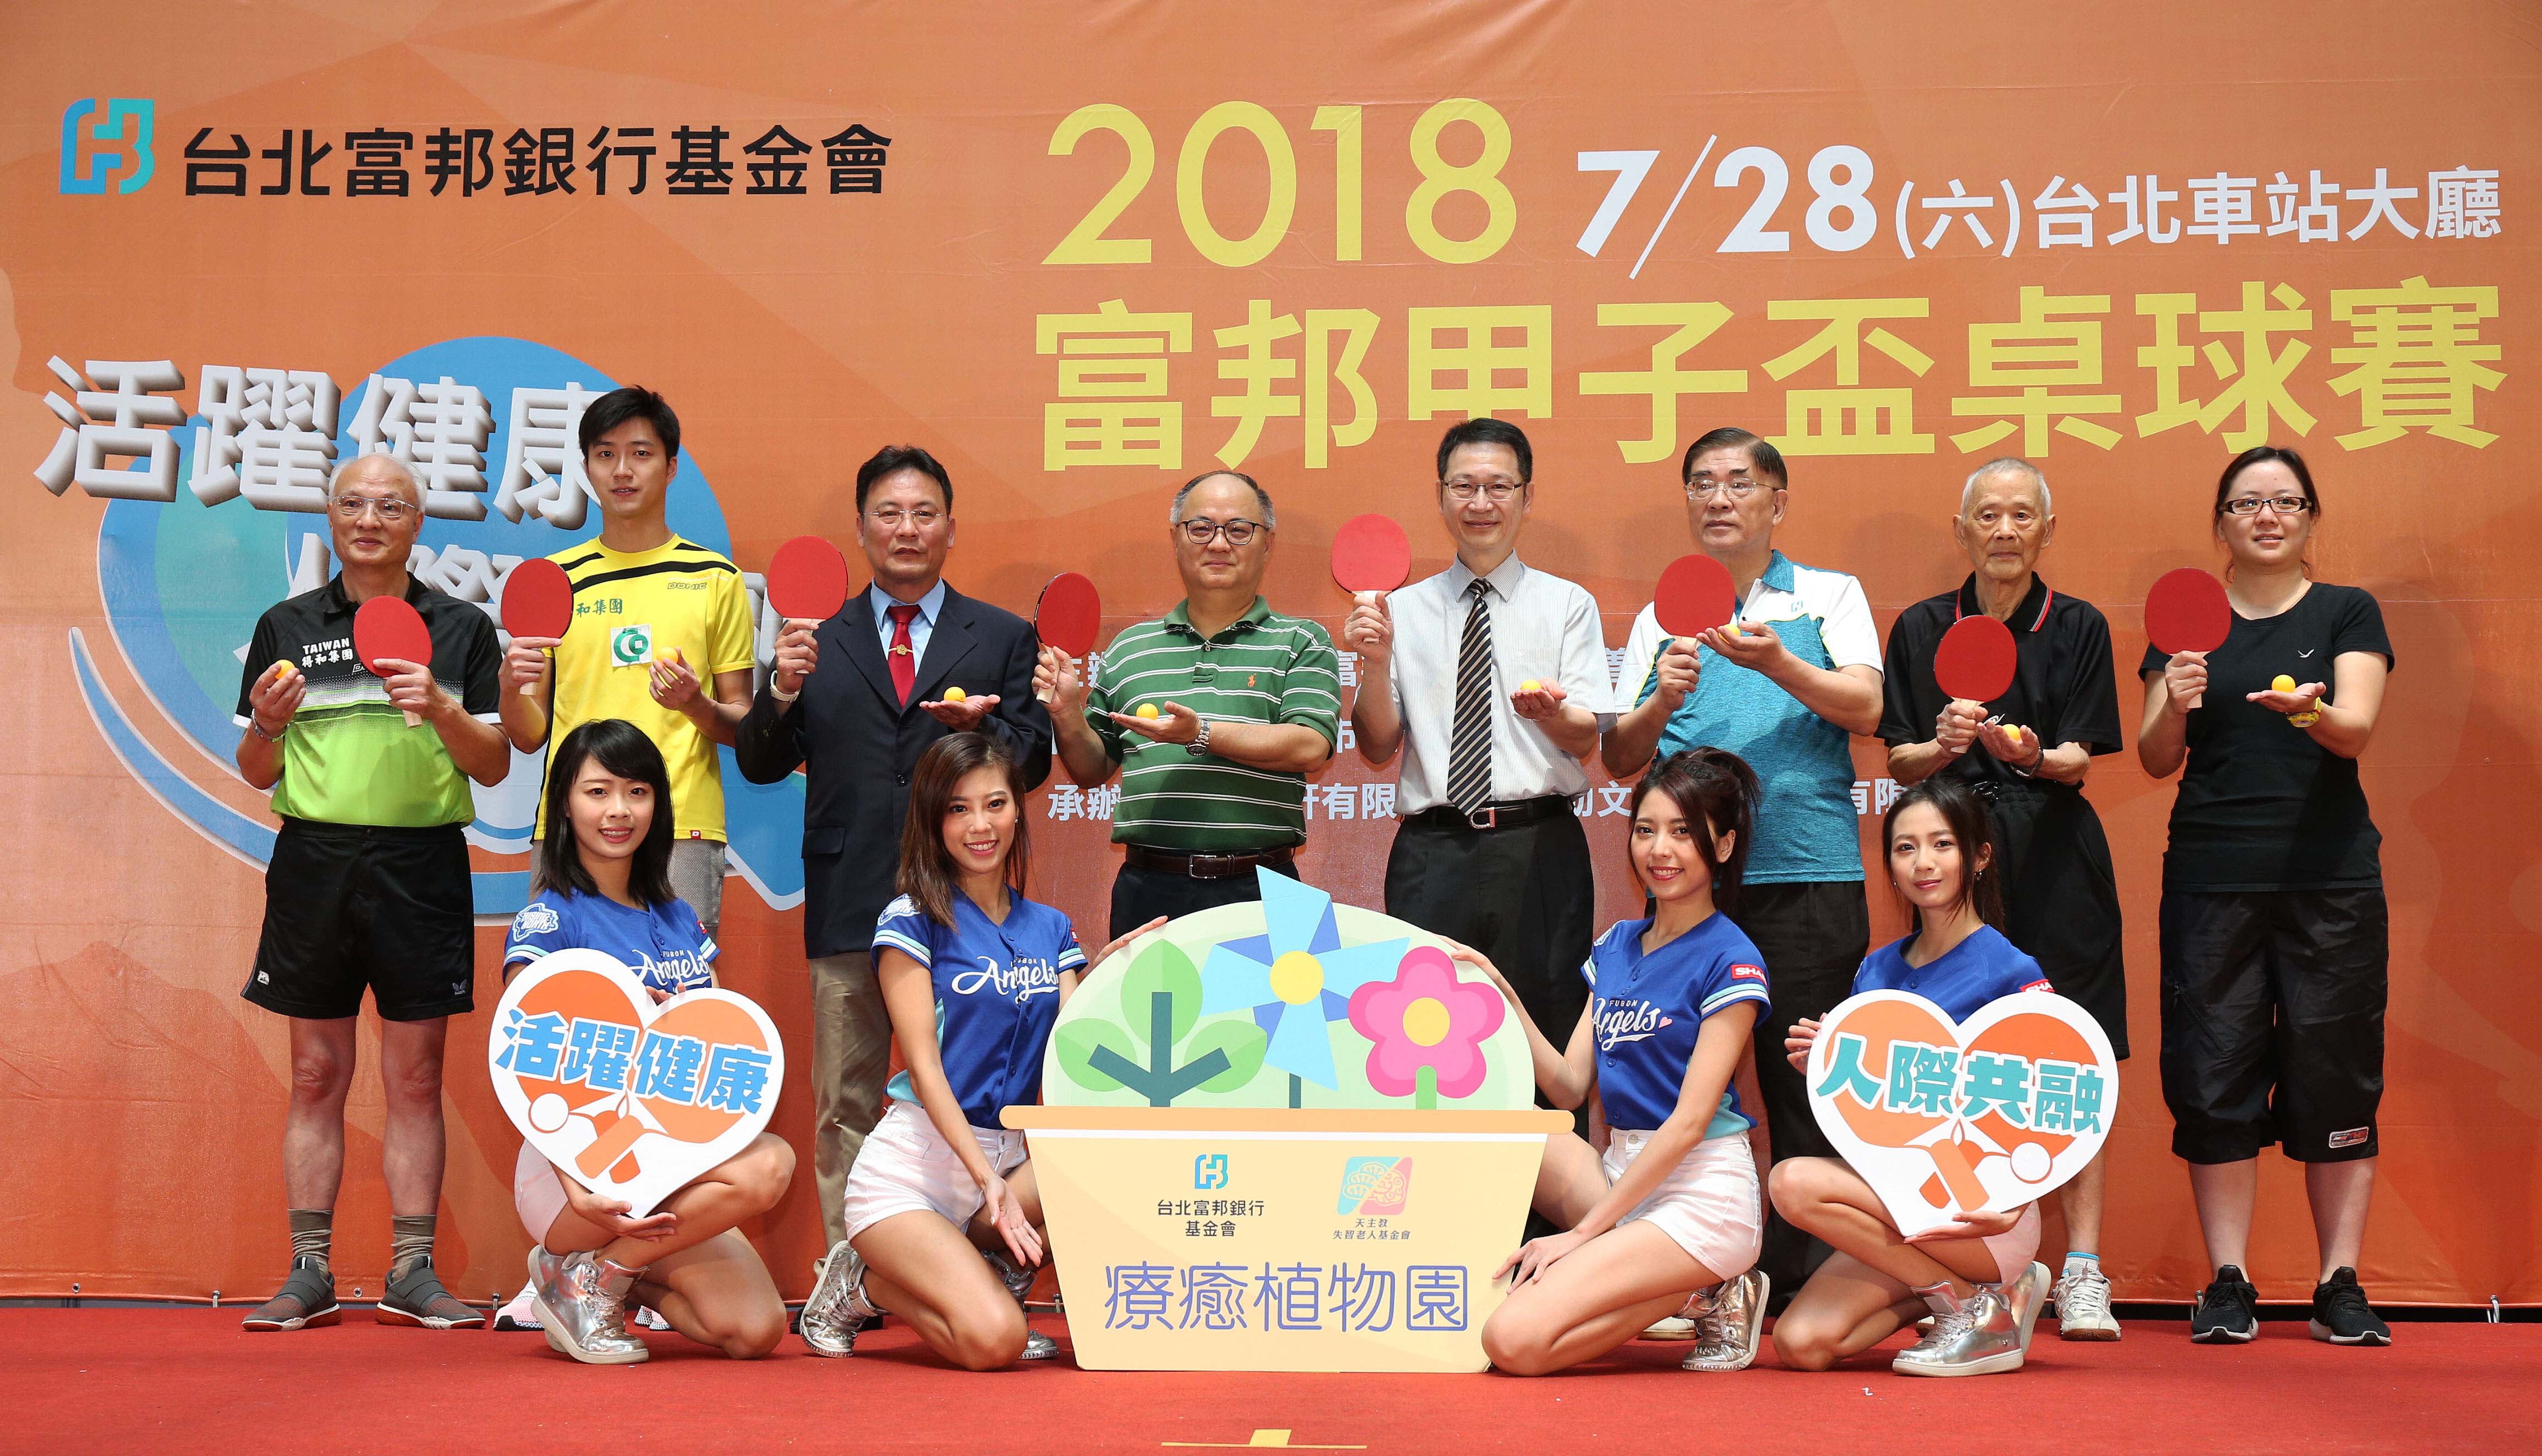 「2018富邦甲子盃桌球賽」首度在台北車站大廳開打  250位長者熱情參與封面圖